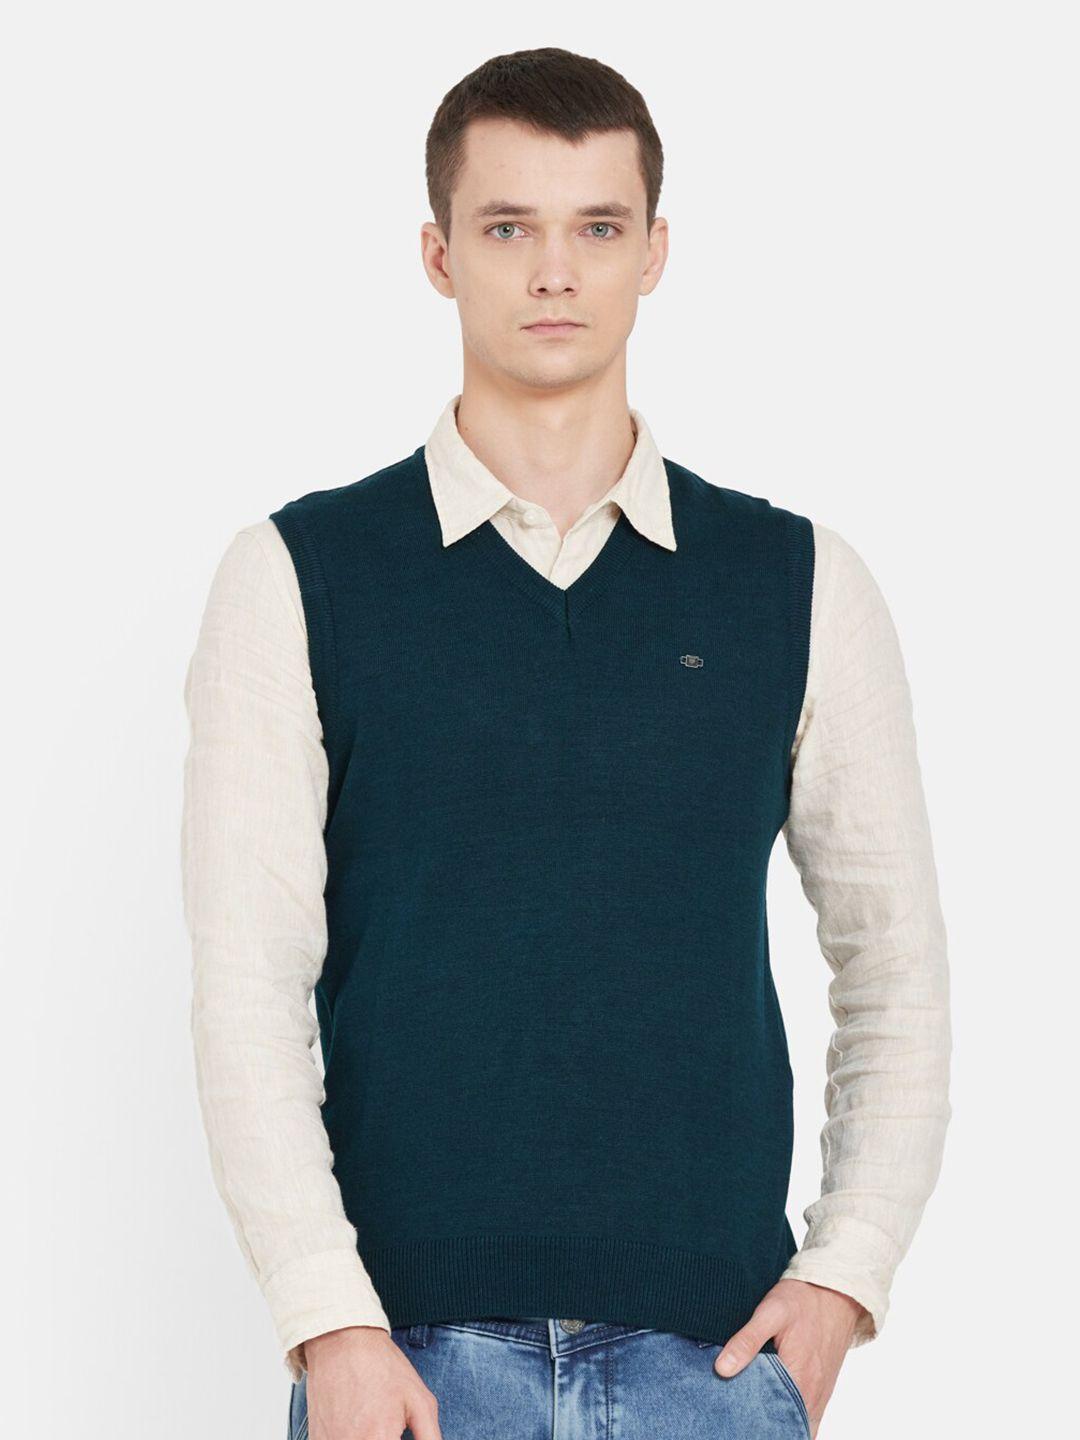 duke-men-teal-solid-sweater-vest